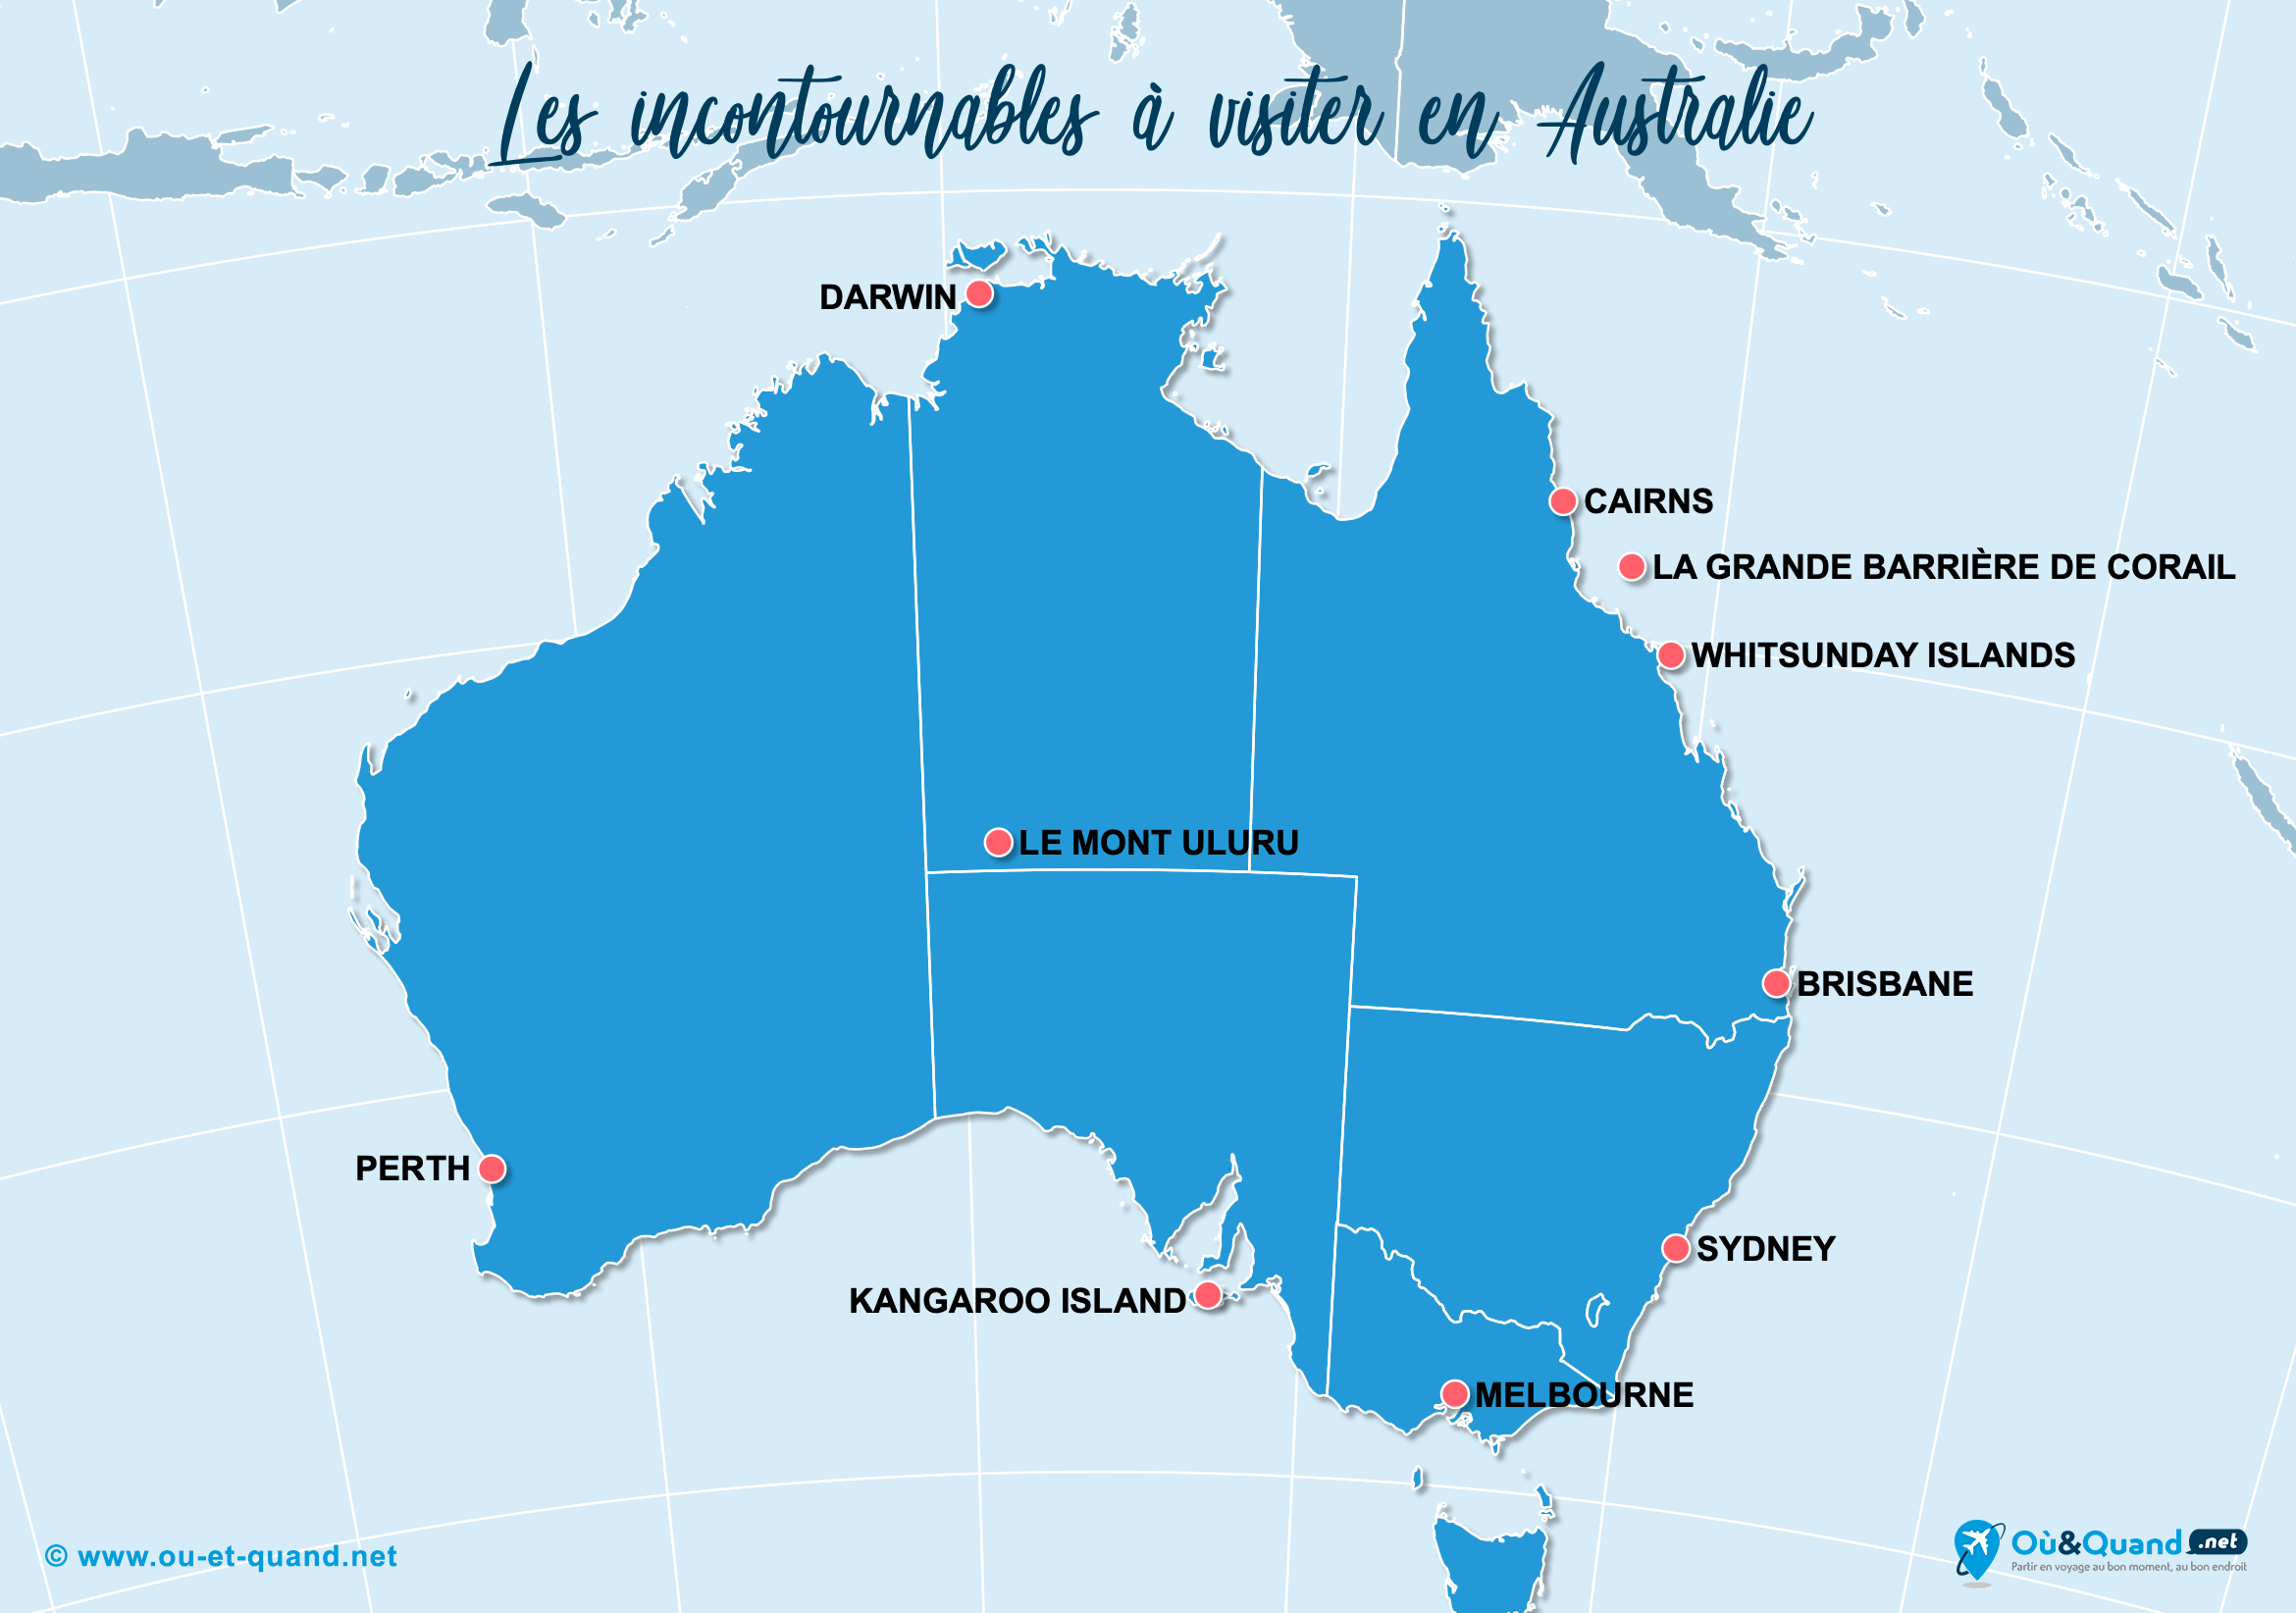 30 lieux incontournables à voir en Australie